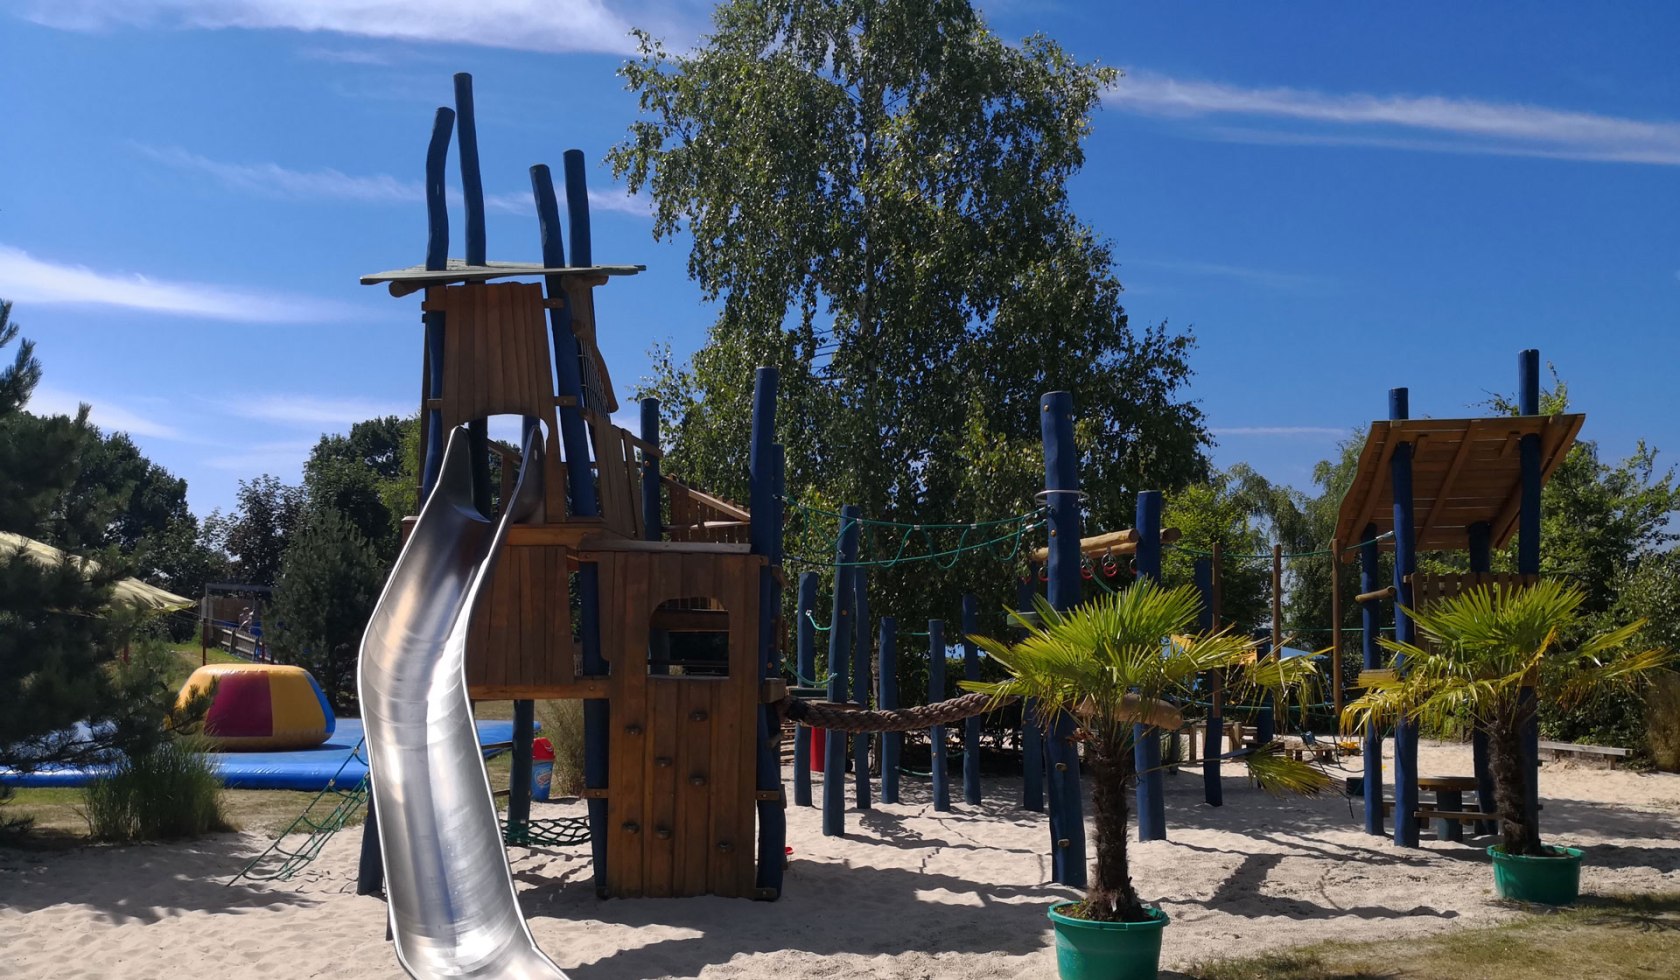 Playground, © Alfsee GmbH